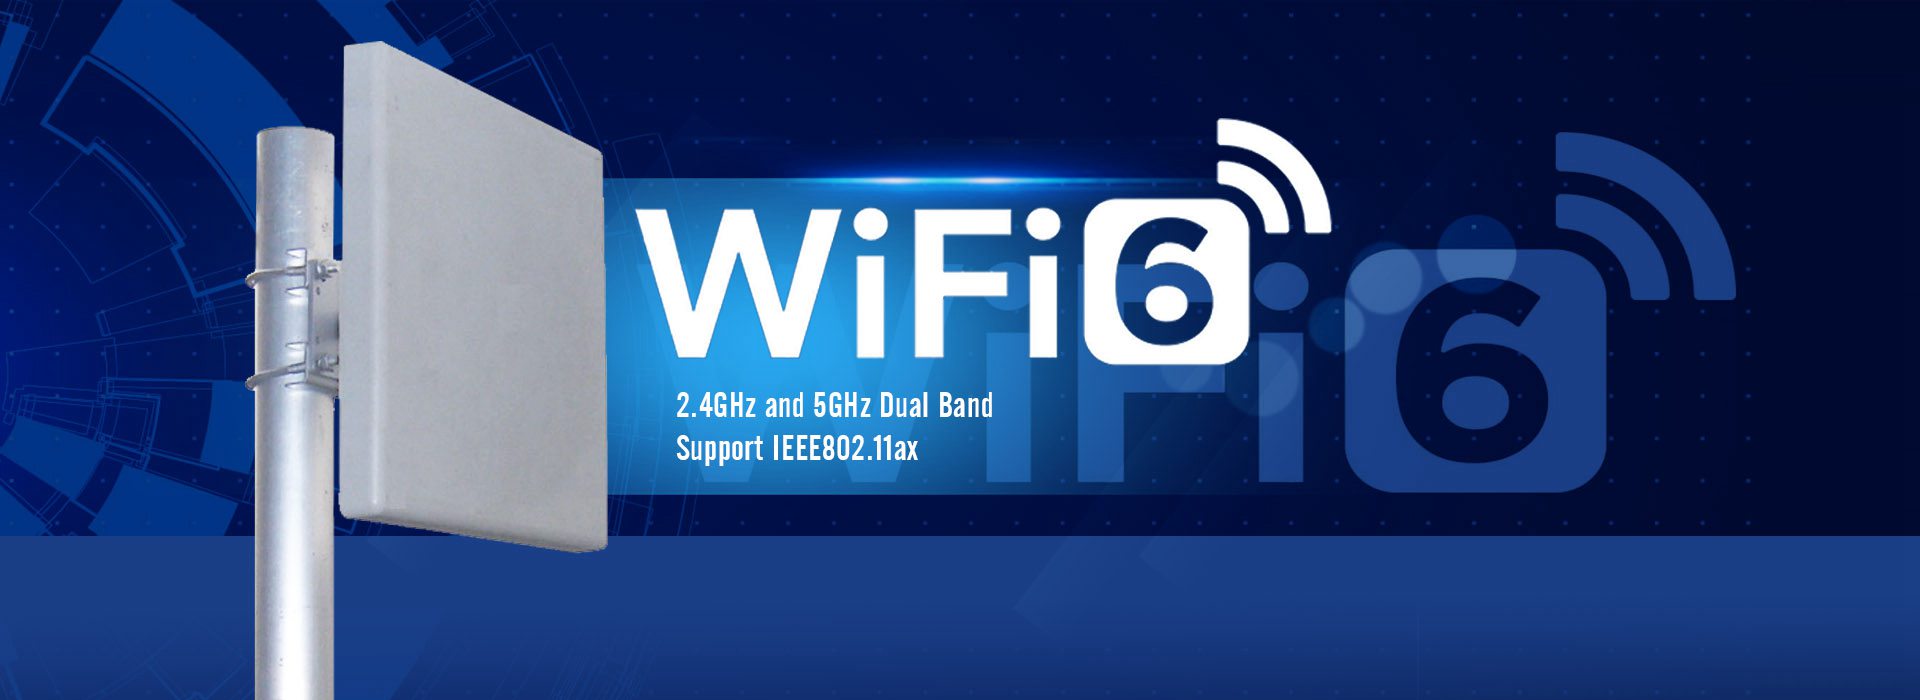 wifi6 antenna